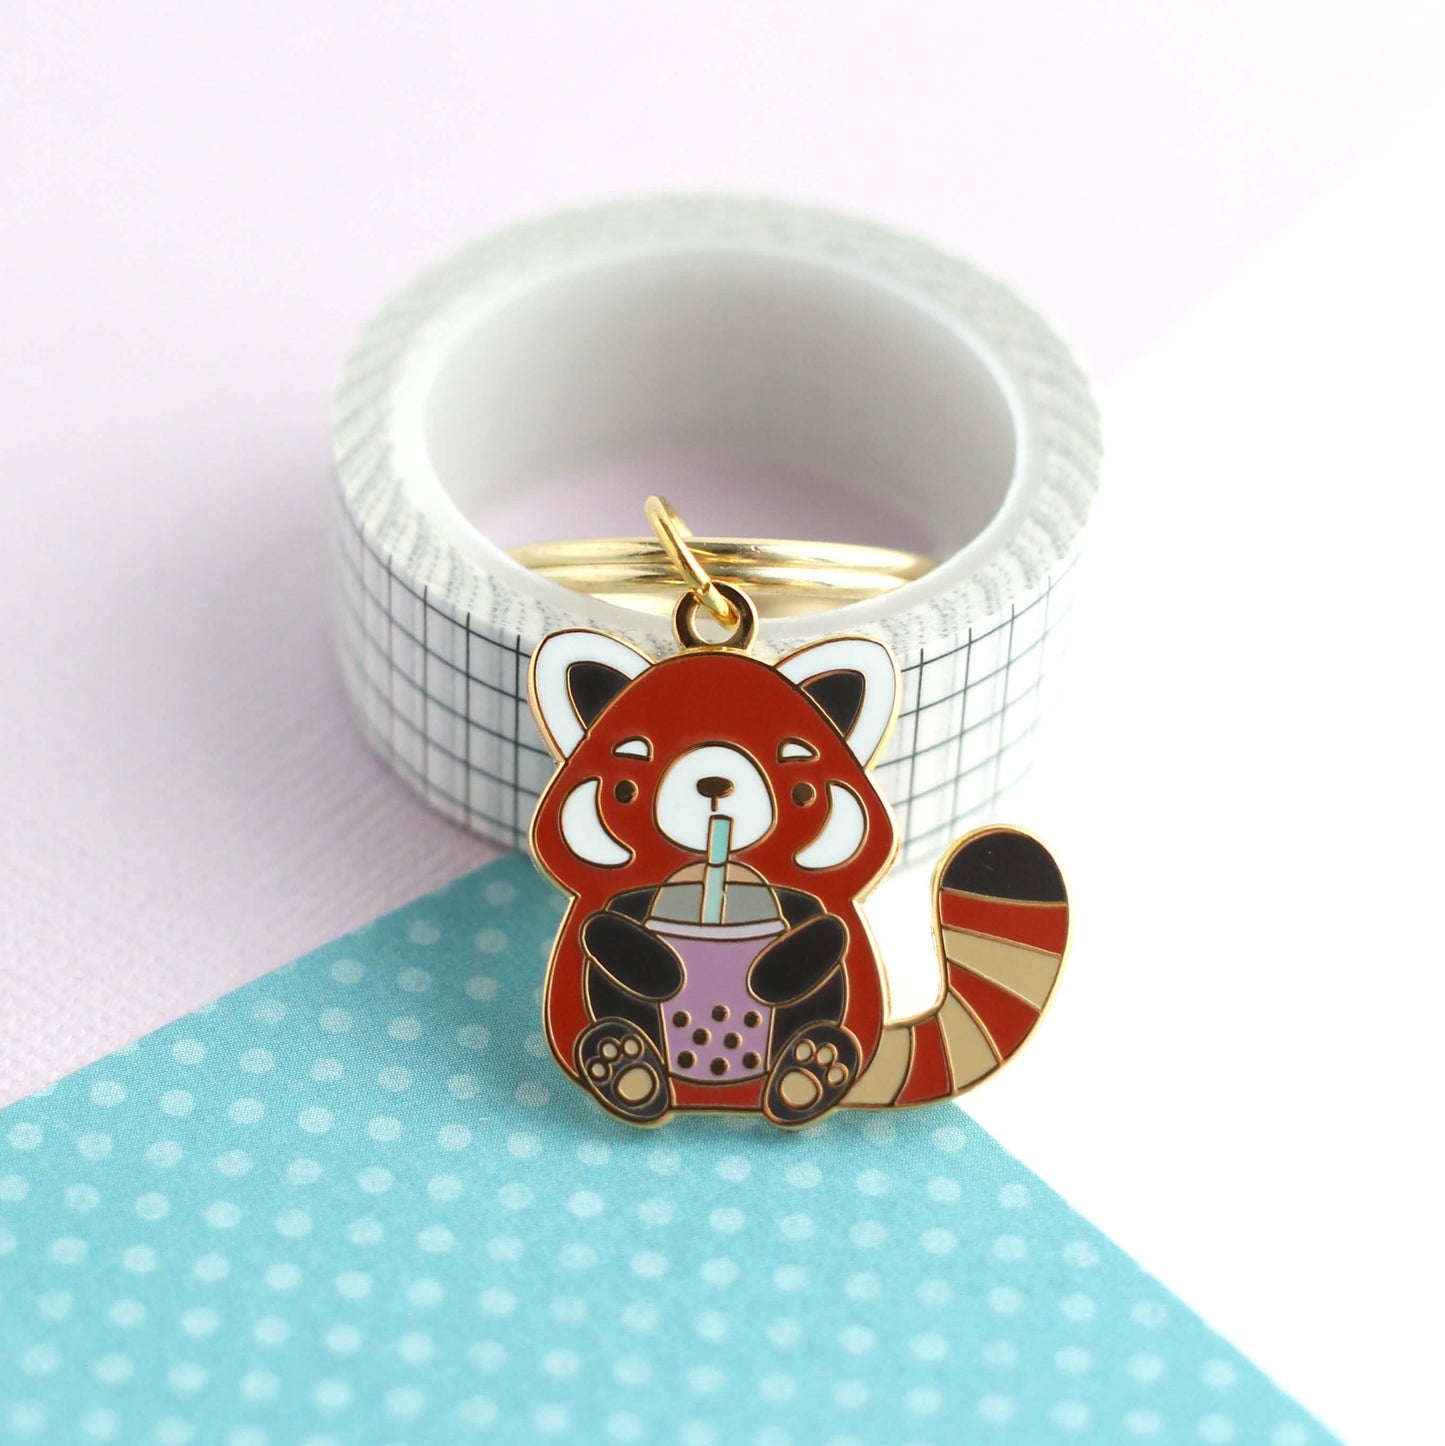 Bubble Tea Red Panda Enamel Keychain